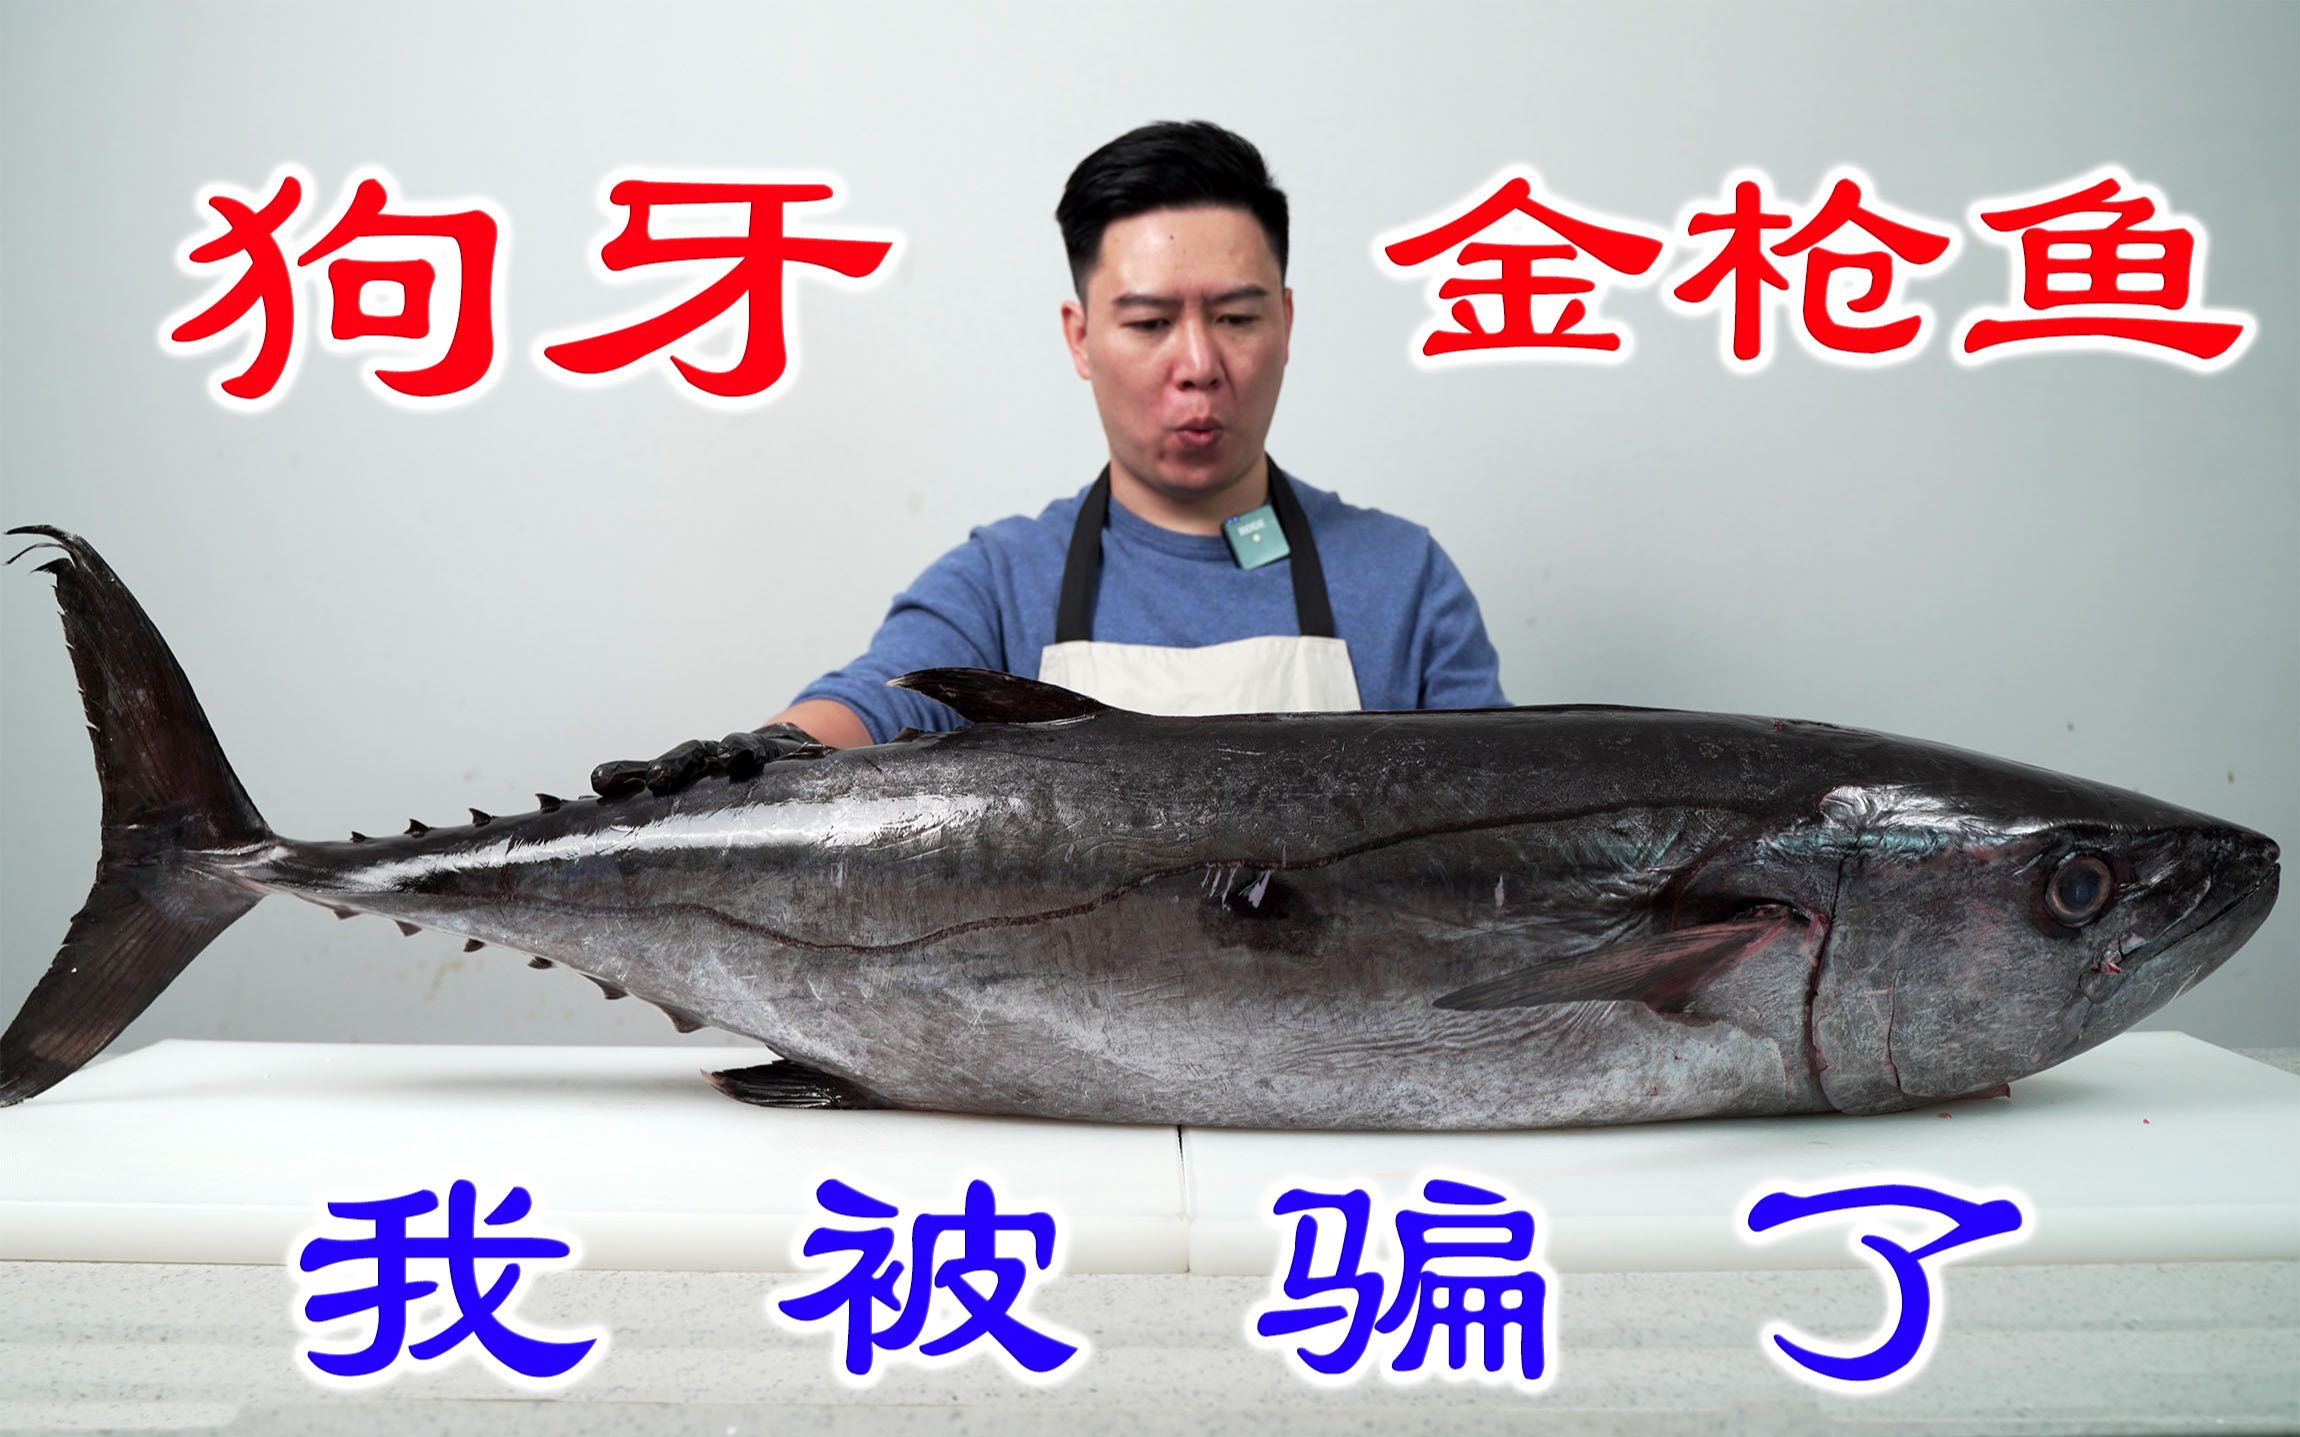 花几千块钱买一条52斤的狗牙金枪鱼，居然被骗了